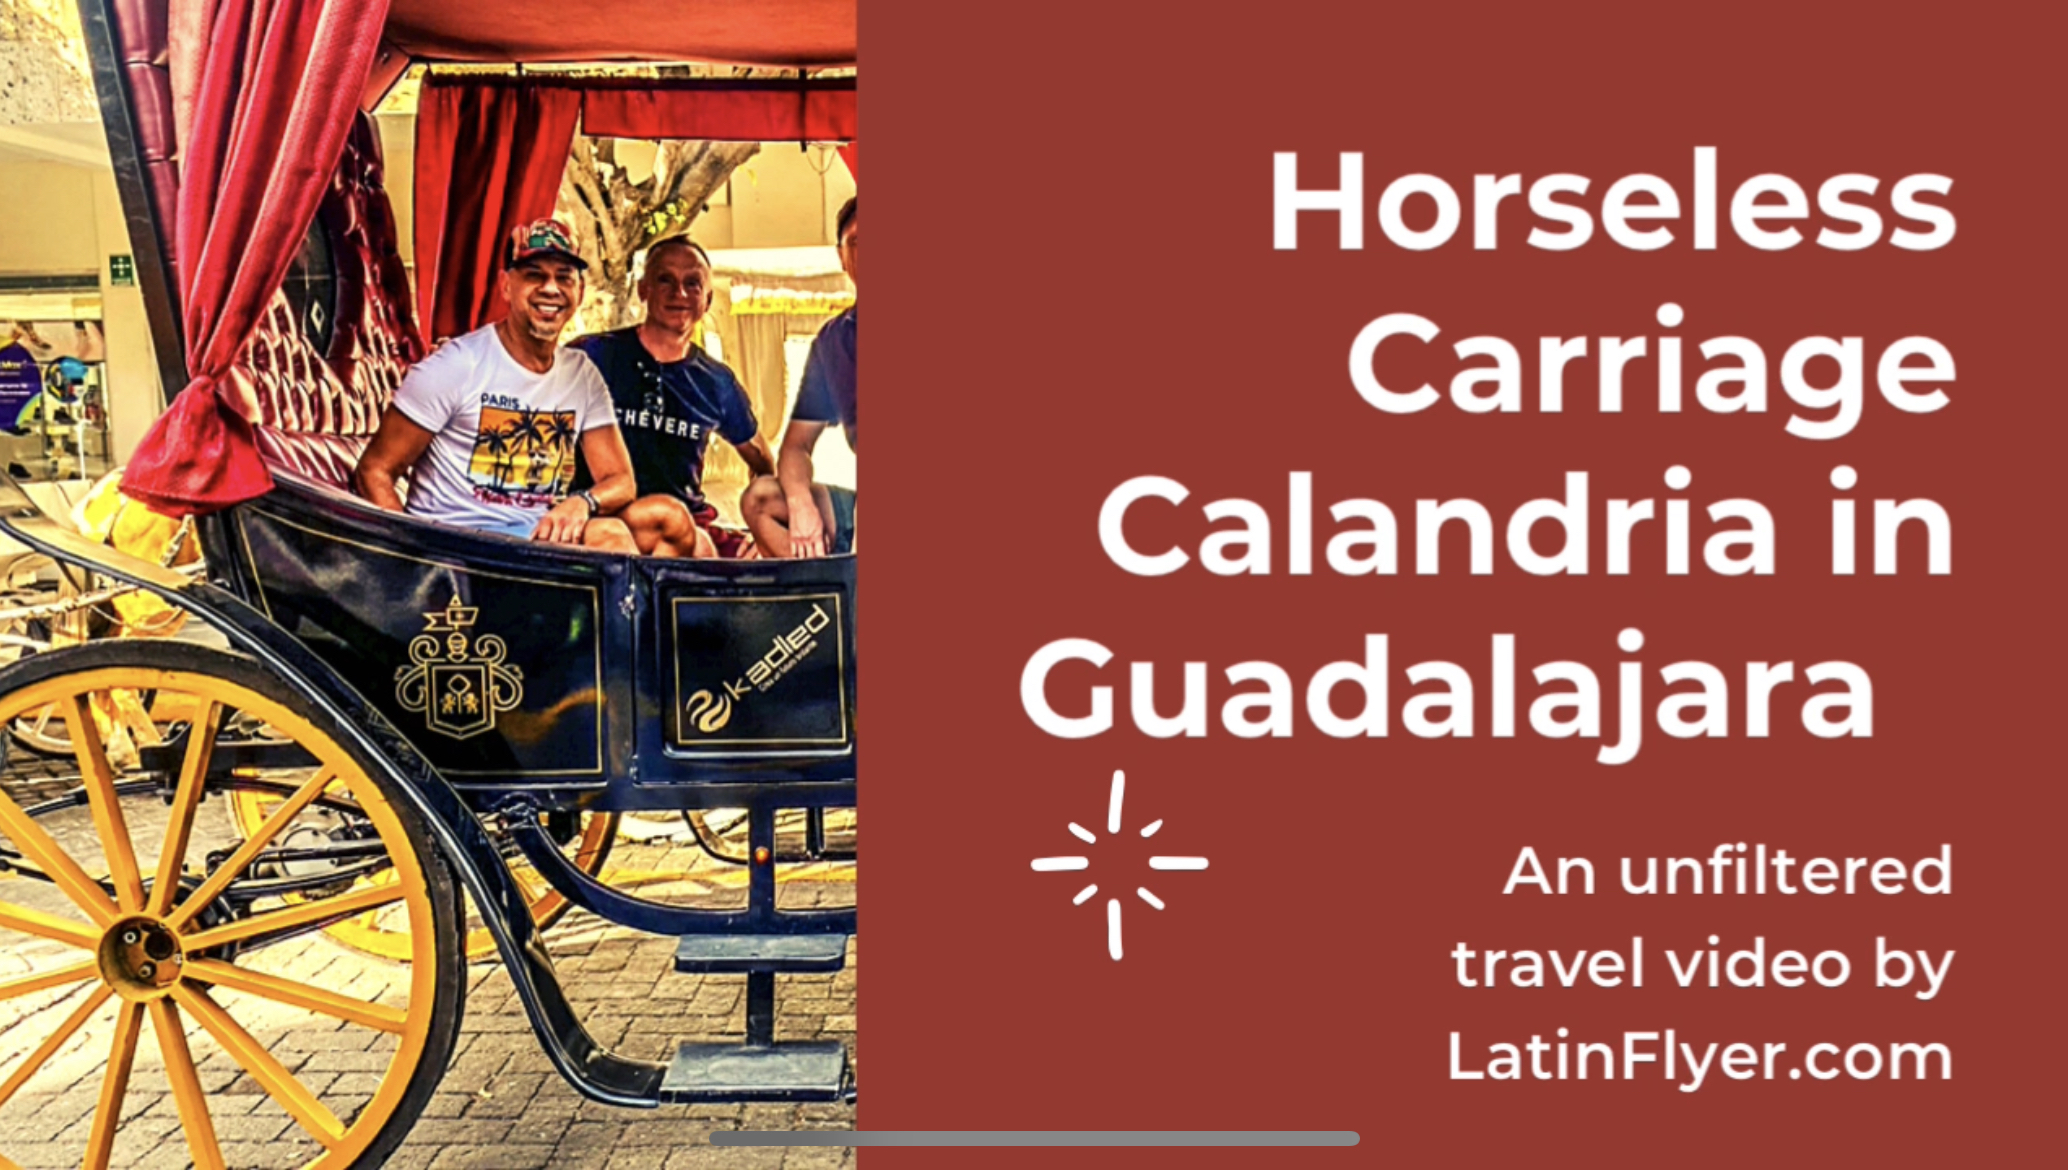 Calandria horseless carriage city tour in Guadalajara